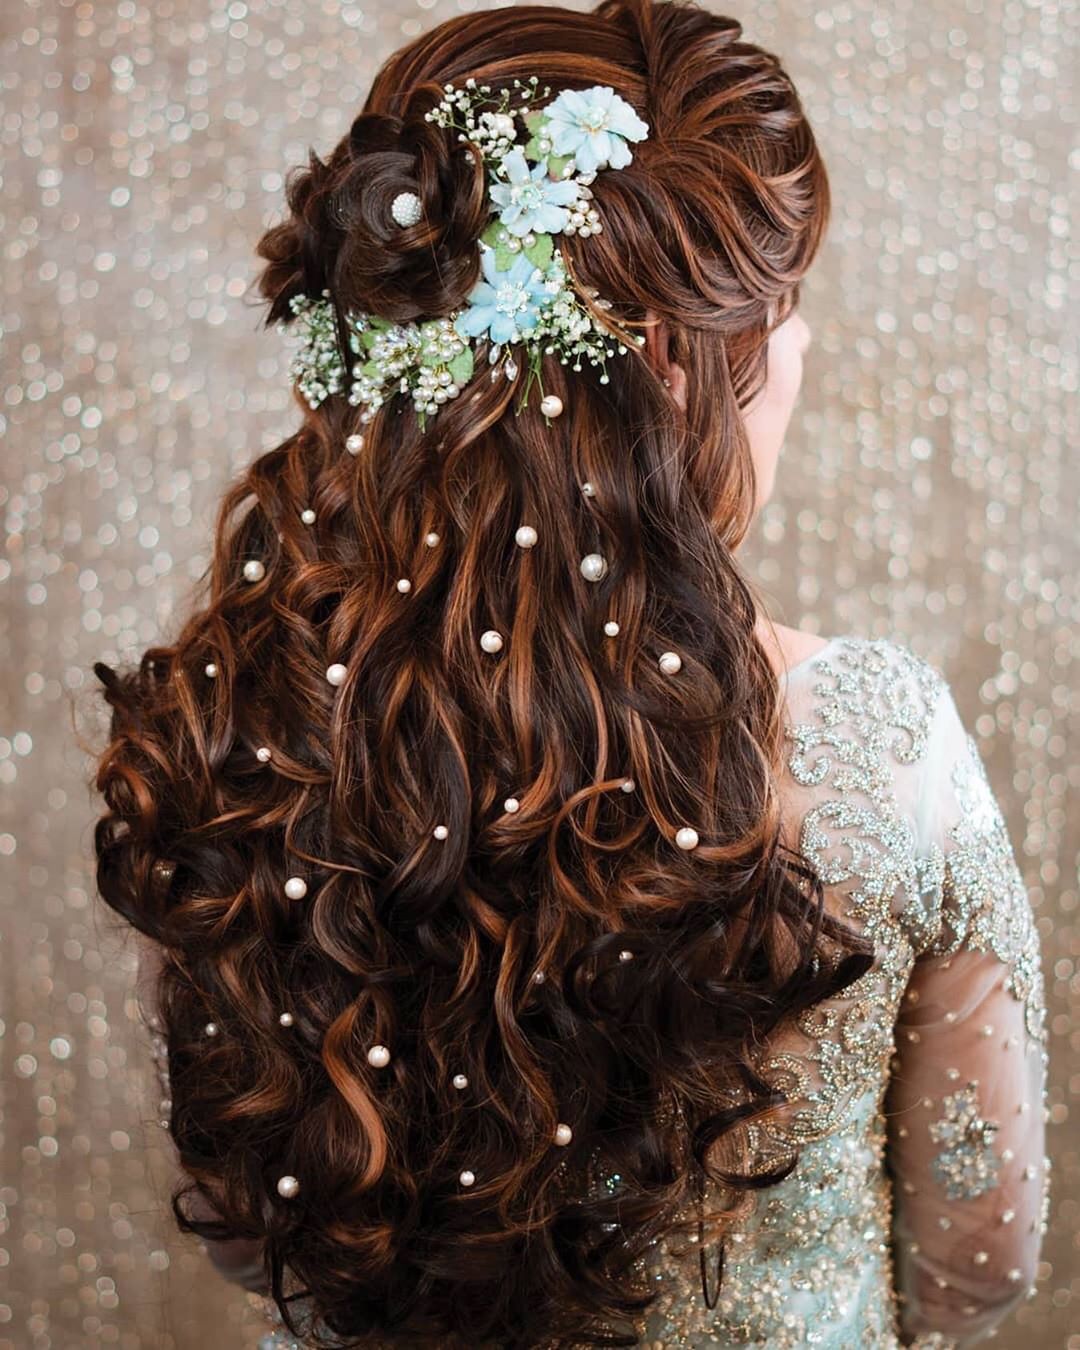 Ponytale hair style | Trending Hair Style For Bridal: शादी-पार्टी के लिए  अपनाएं हेयरस्टाइल के ये तरीके, सब देखेंगे मुड़-मुड़ कर | Gallery  Photogallery at india.com